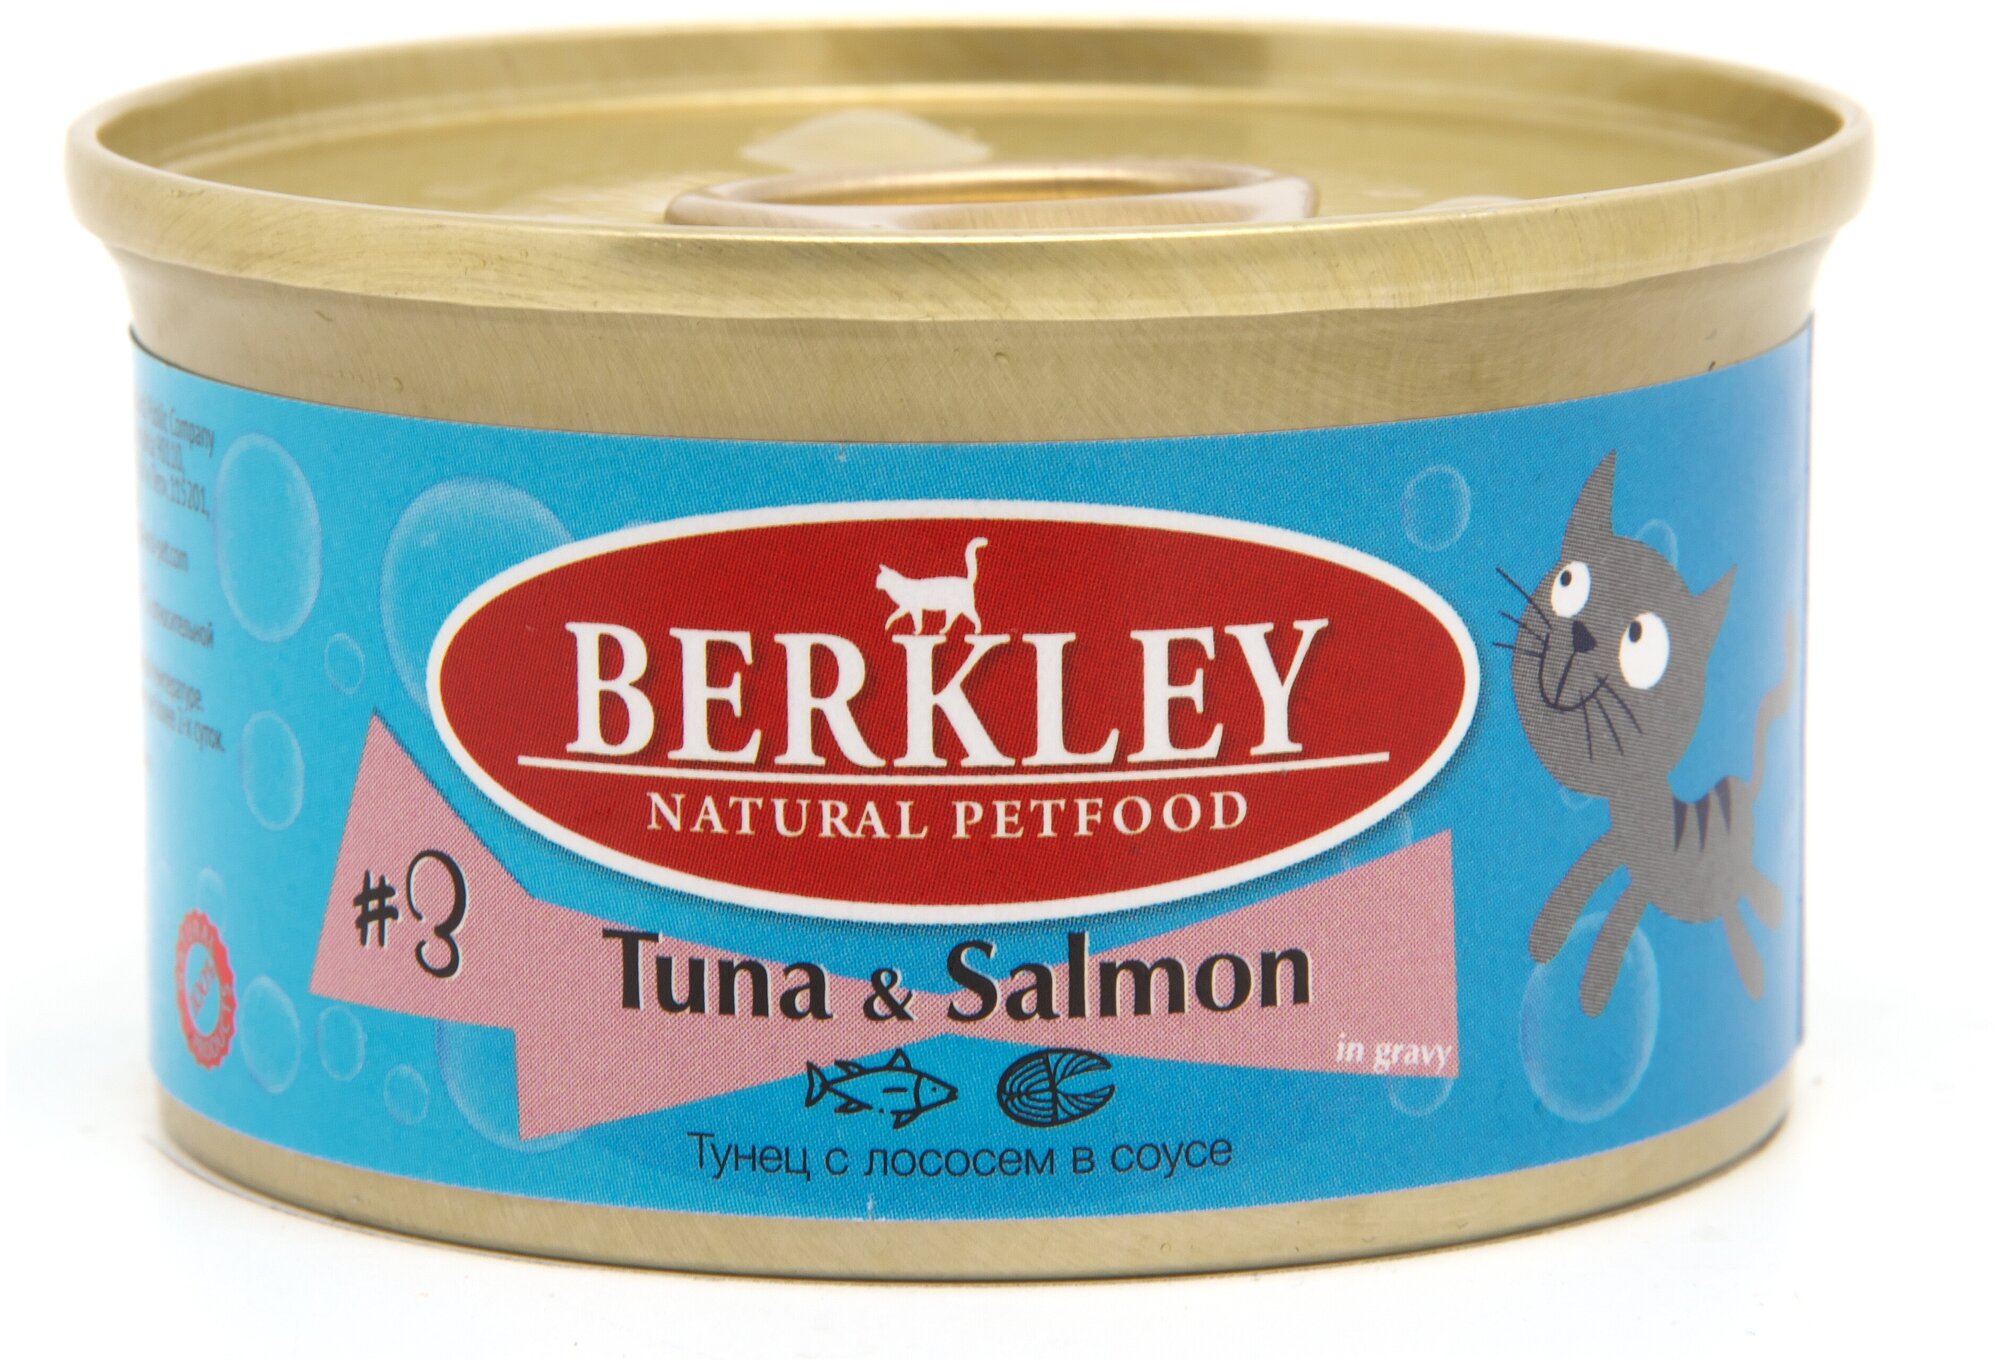 Berkley консервы для кошек тунец с лососем №3 85 гр